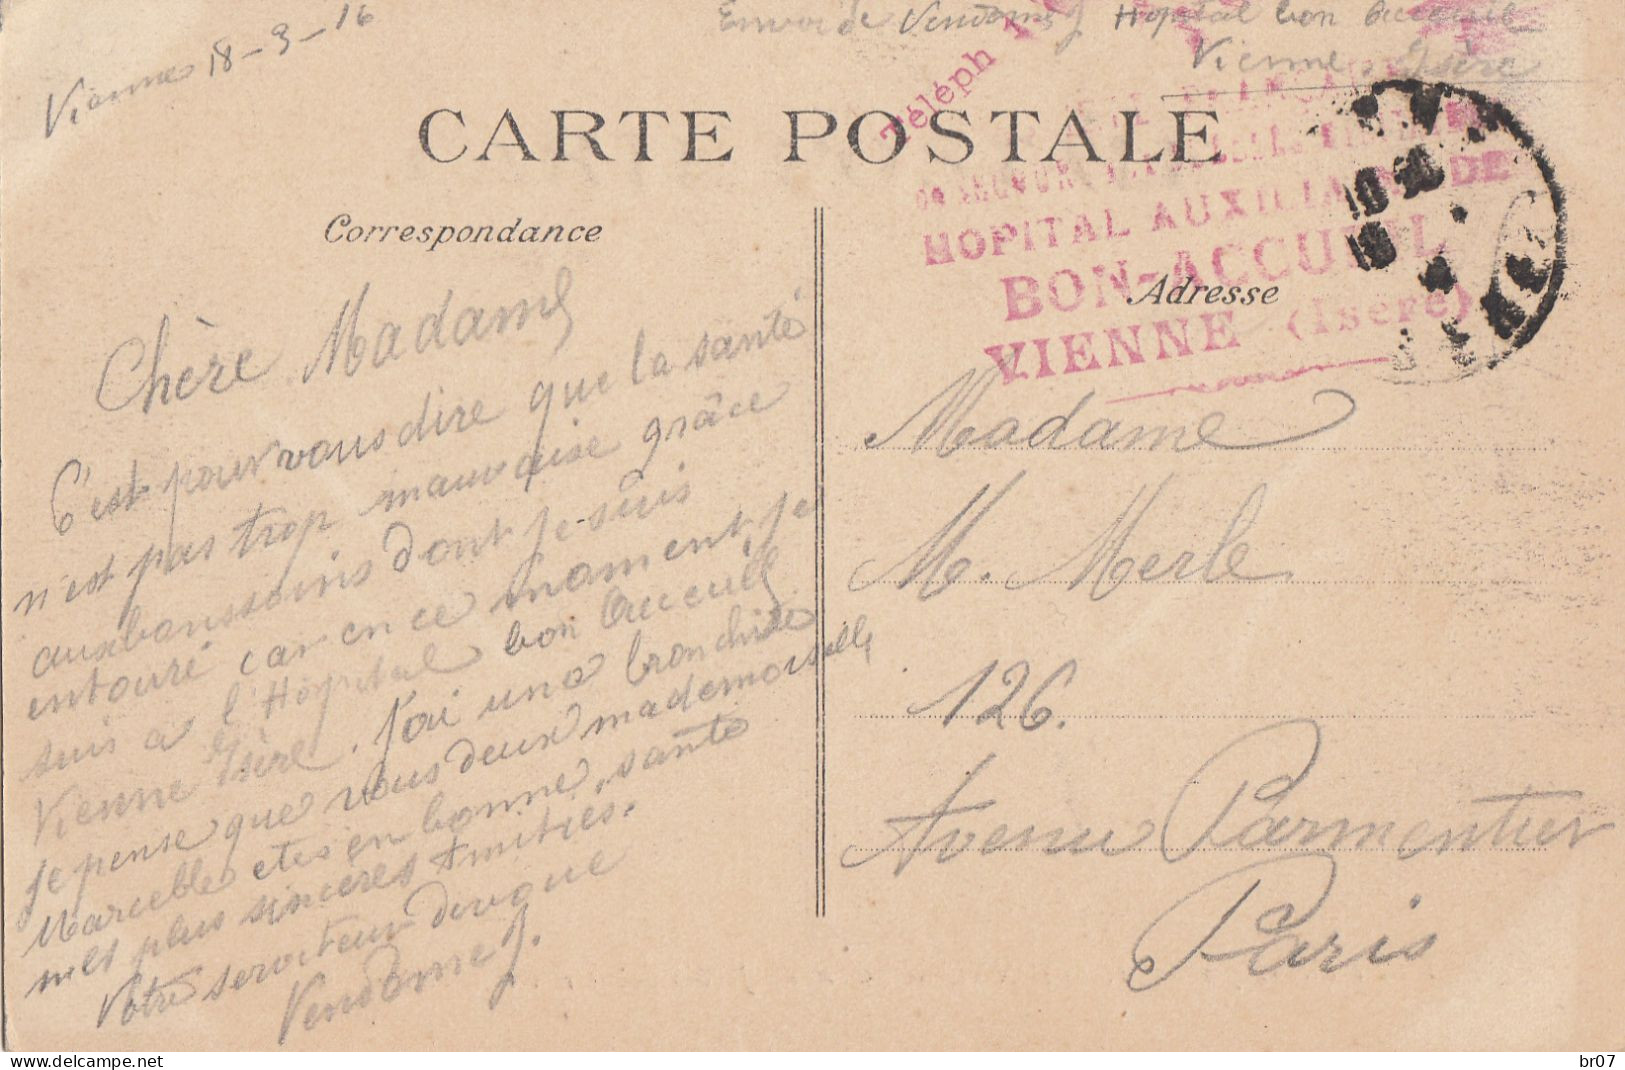 ISERE CP 1916 VIENNE FM HOPITAL AUXILIAIRE DE BON ACCUEIL VIENNE - 1. Weltkrieg 1914-1918